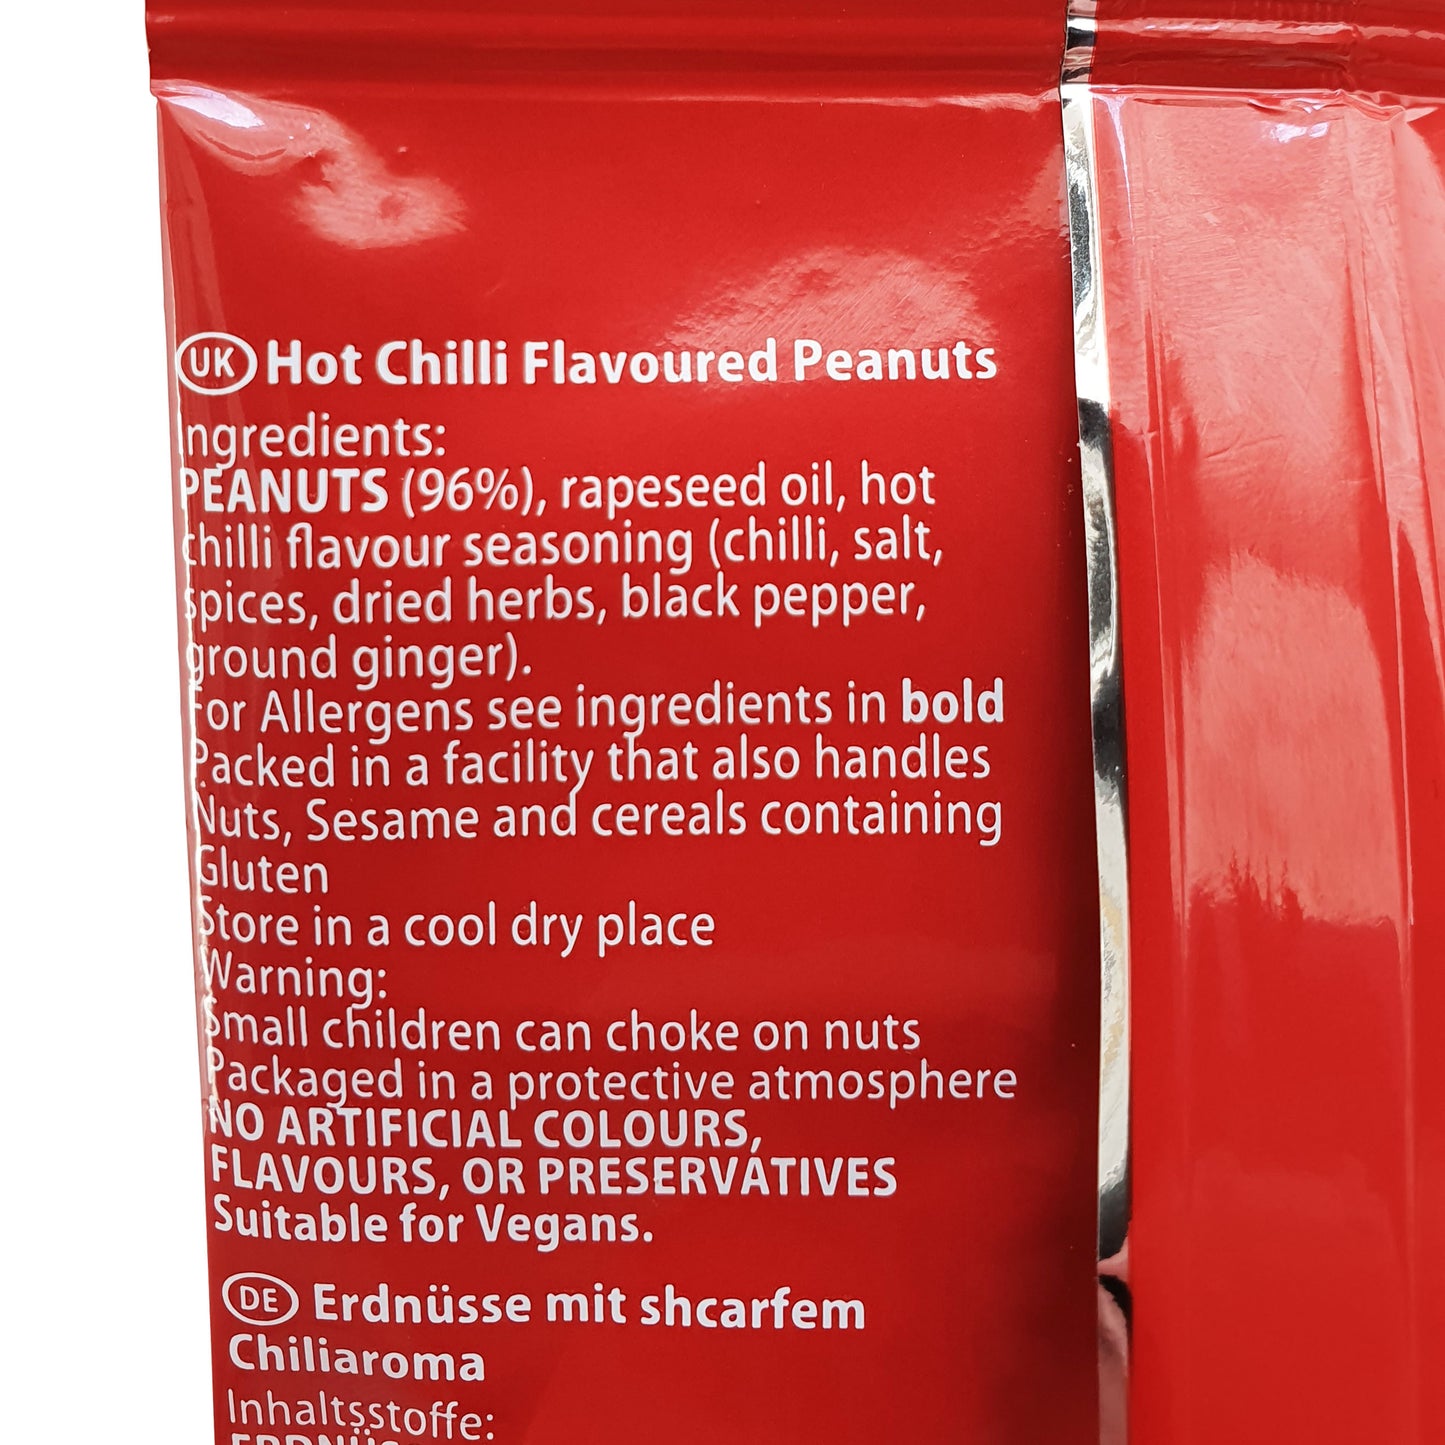 ViPnuts Hot Chilli peanuts 63g pack